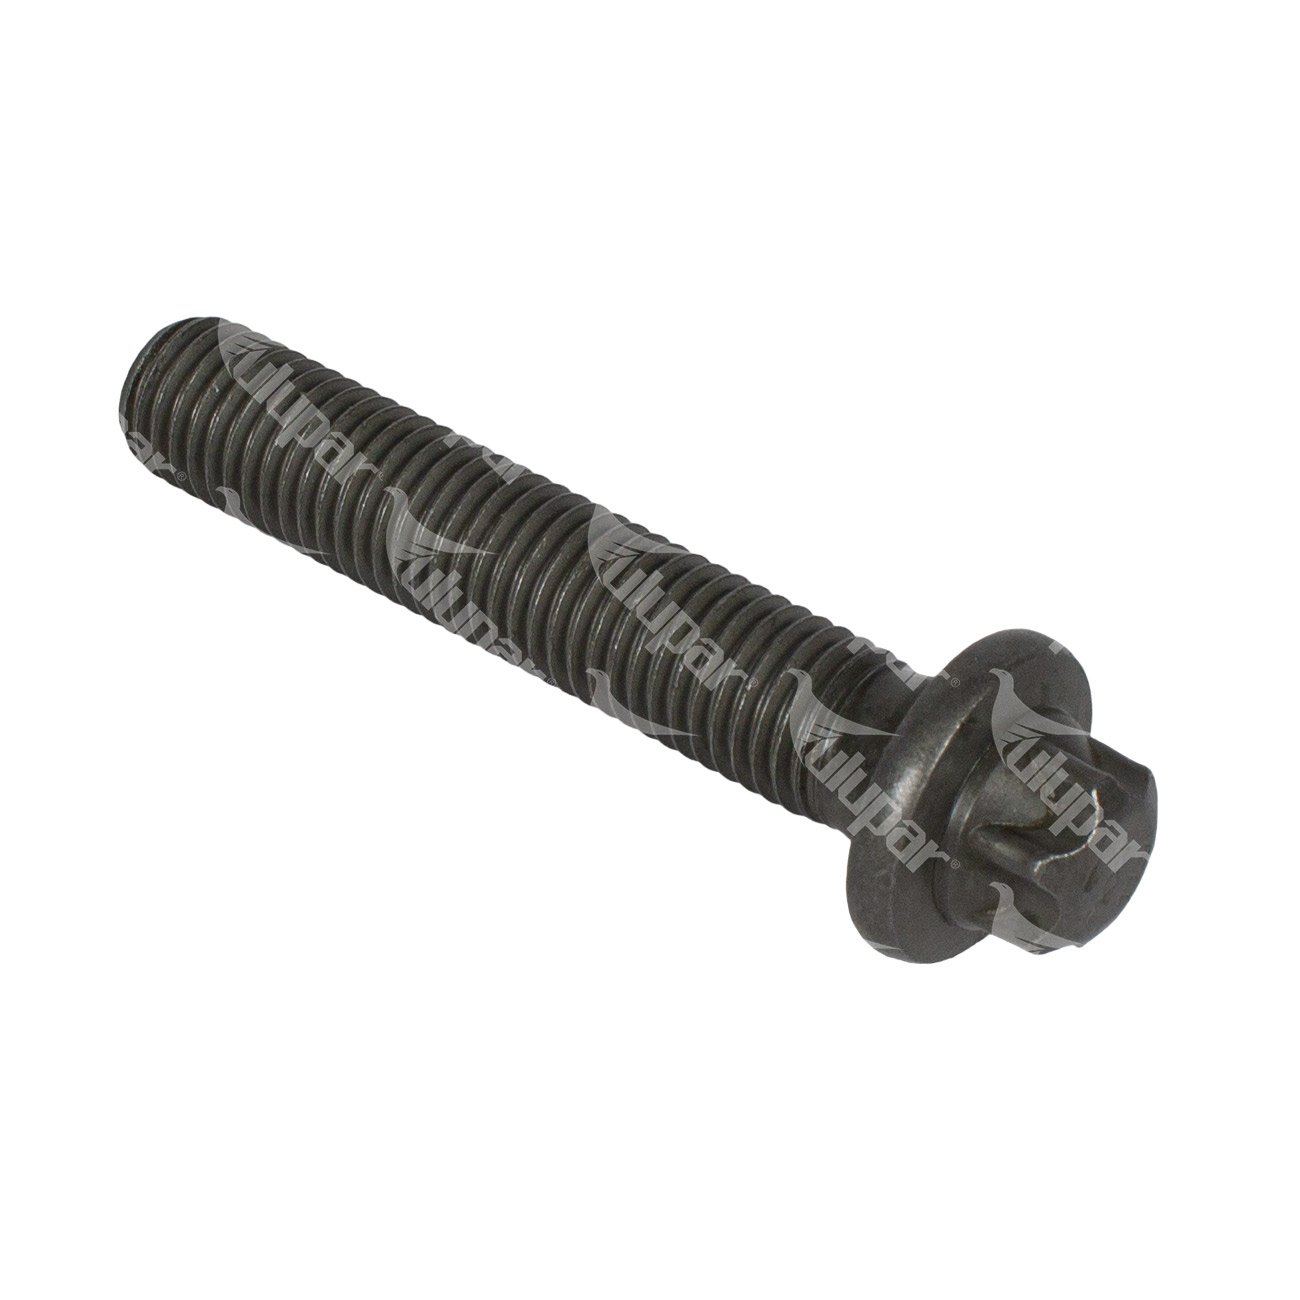 474960 - Connecting rod screw 